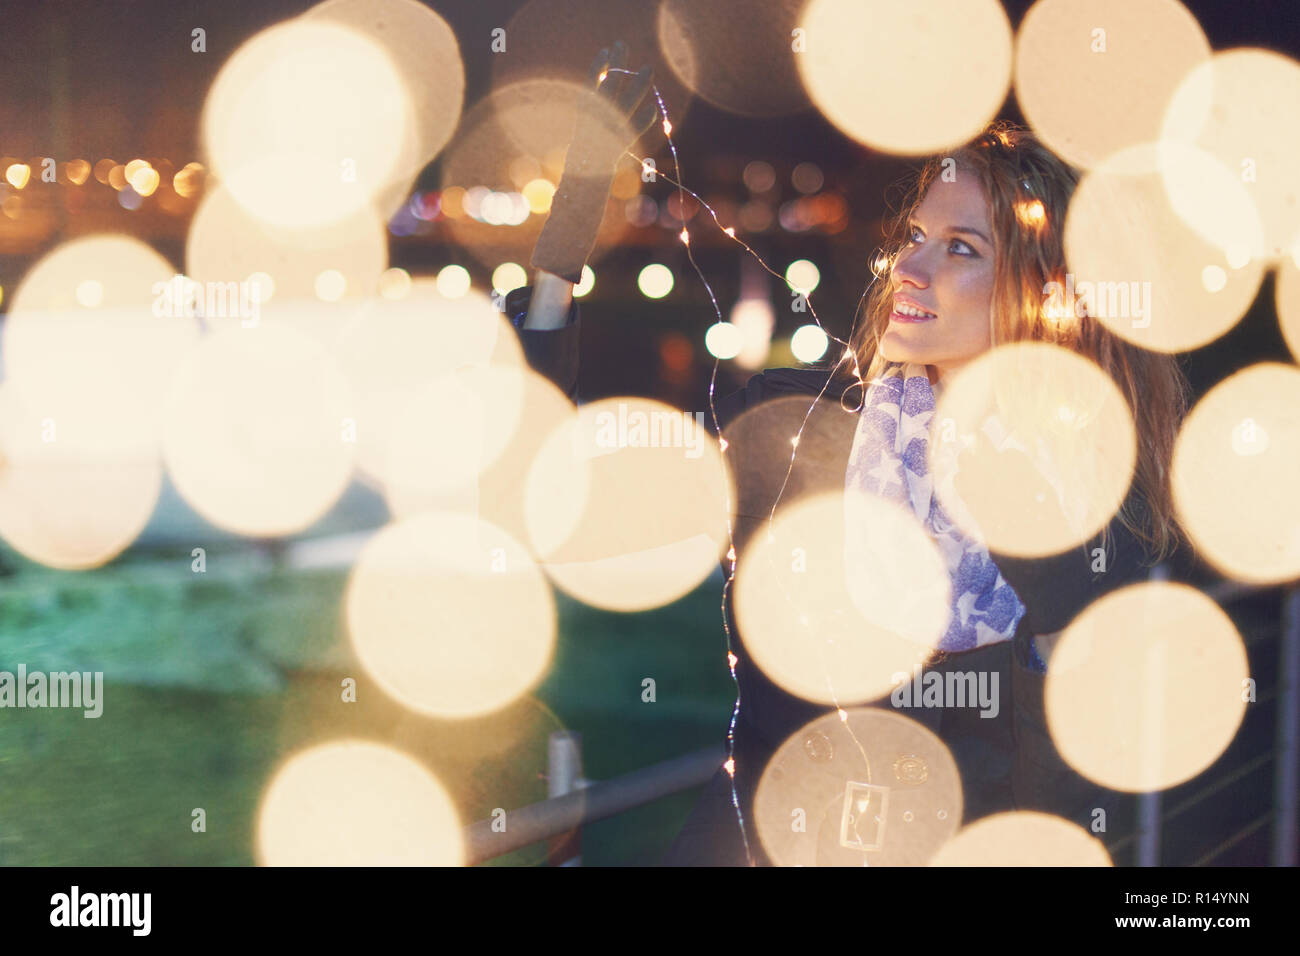 Jeune femme jouant avec fairy lights au winter outdoor looking away Banque D'Images